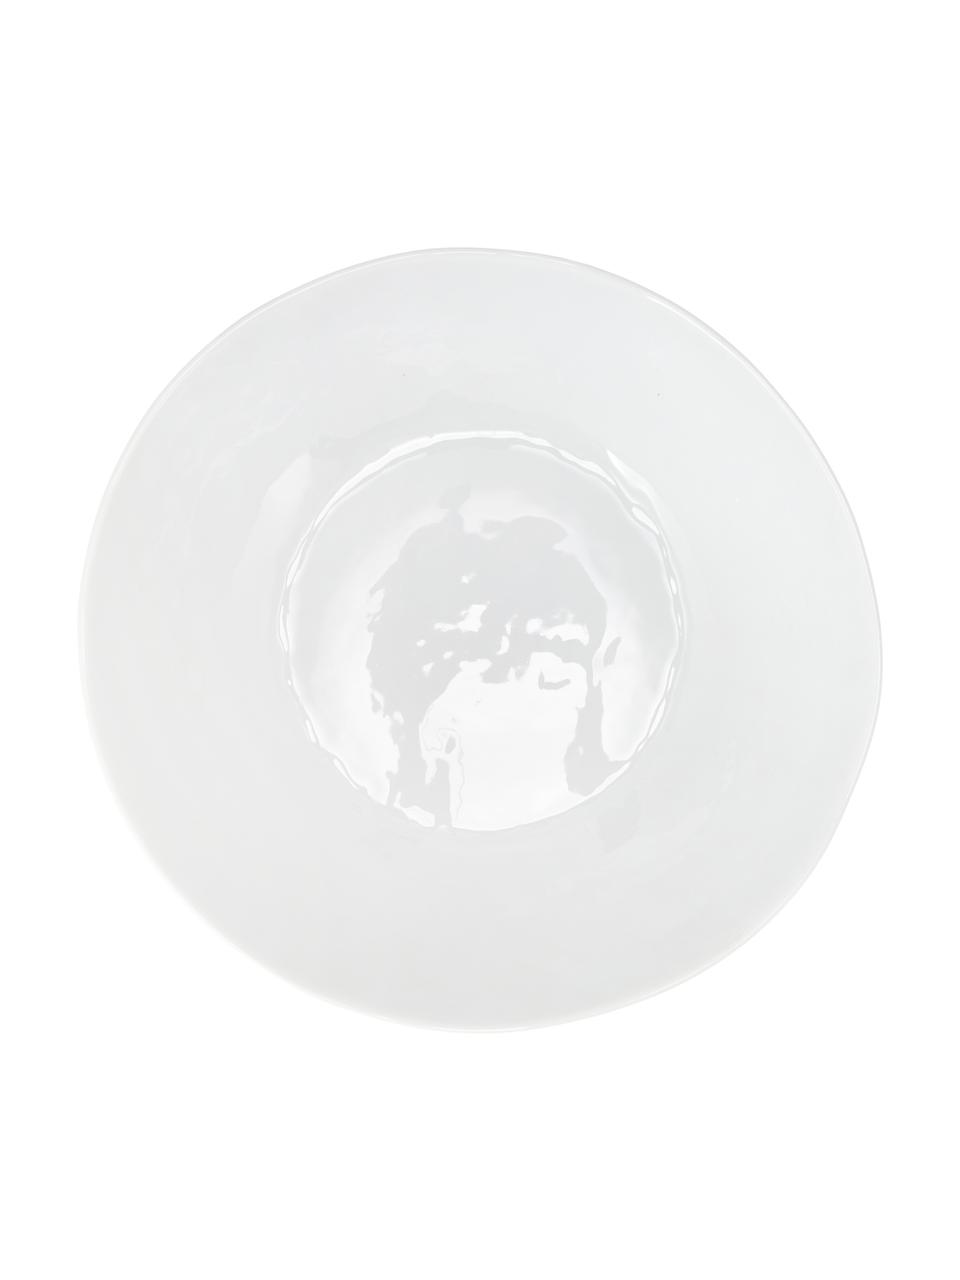 Ovale Schüssel Porcelino mit unebener Oberfläche, Porzellan, gewollt ungleichmäßig, Weiß, B 33 x T 37 cm